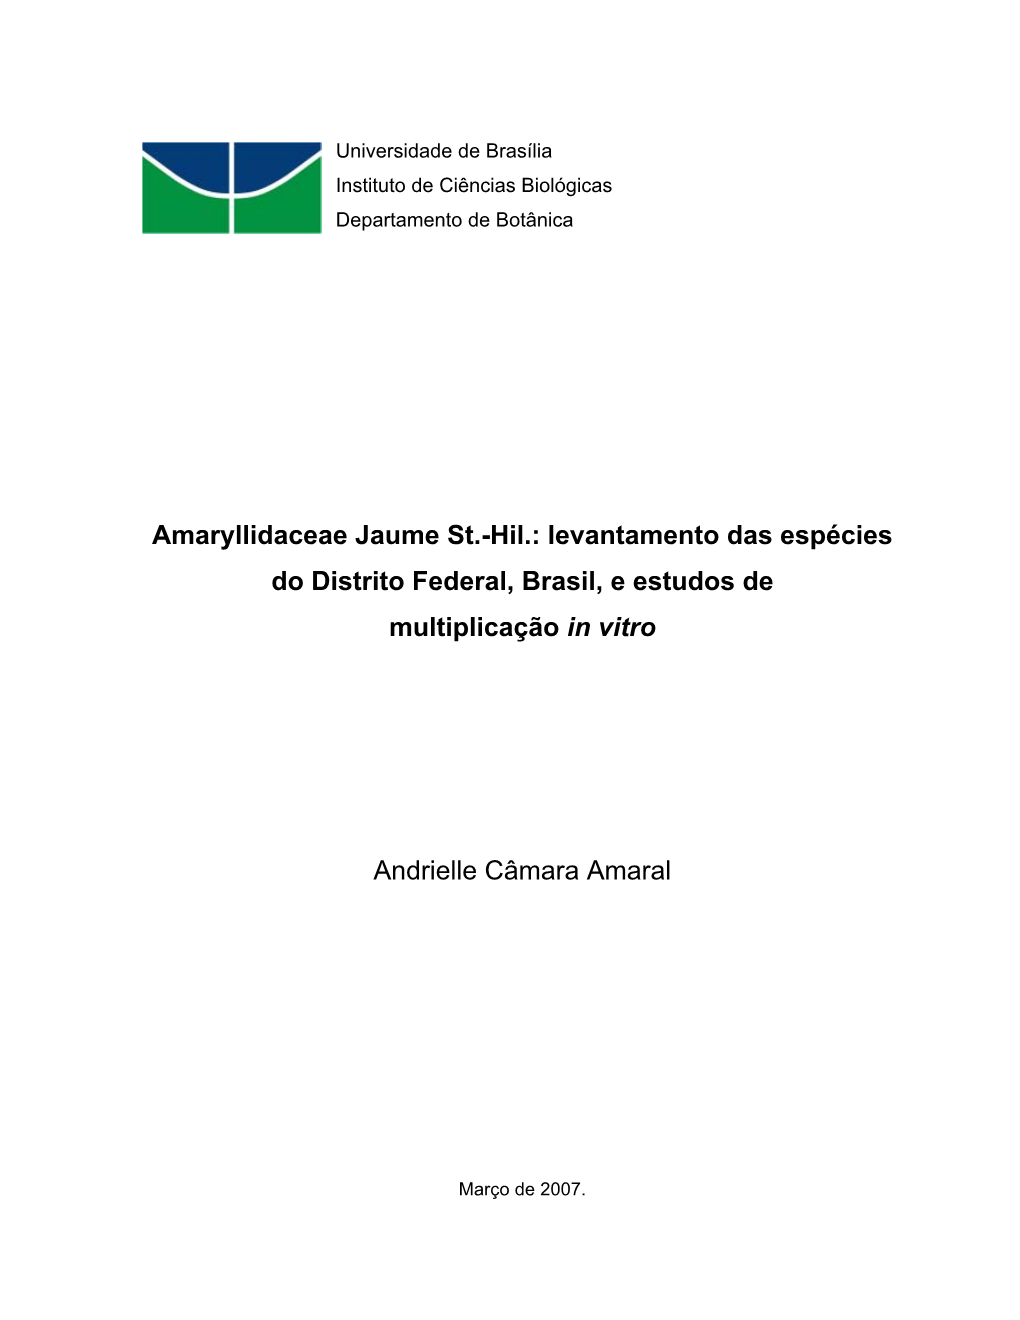 Amaryllidaceae Jaume St.-Hil.: Levantamento Das Espécies Do Distrito Federal, Brasil, E Estudos De Multiplicação in Vitro